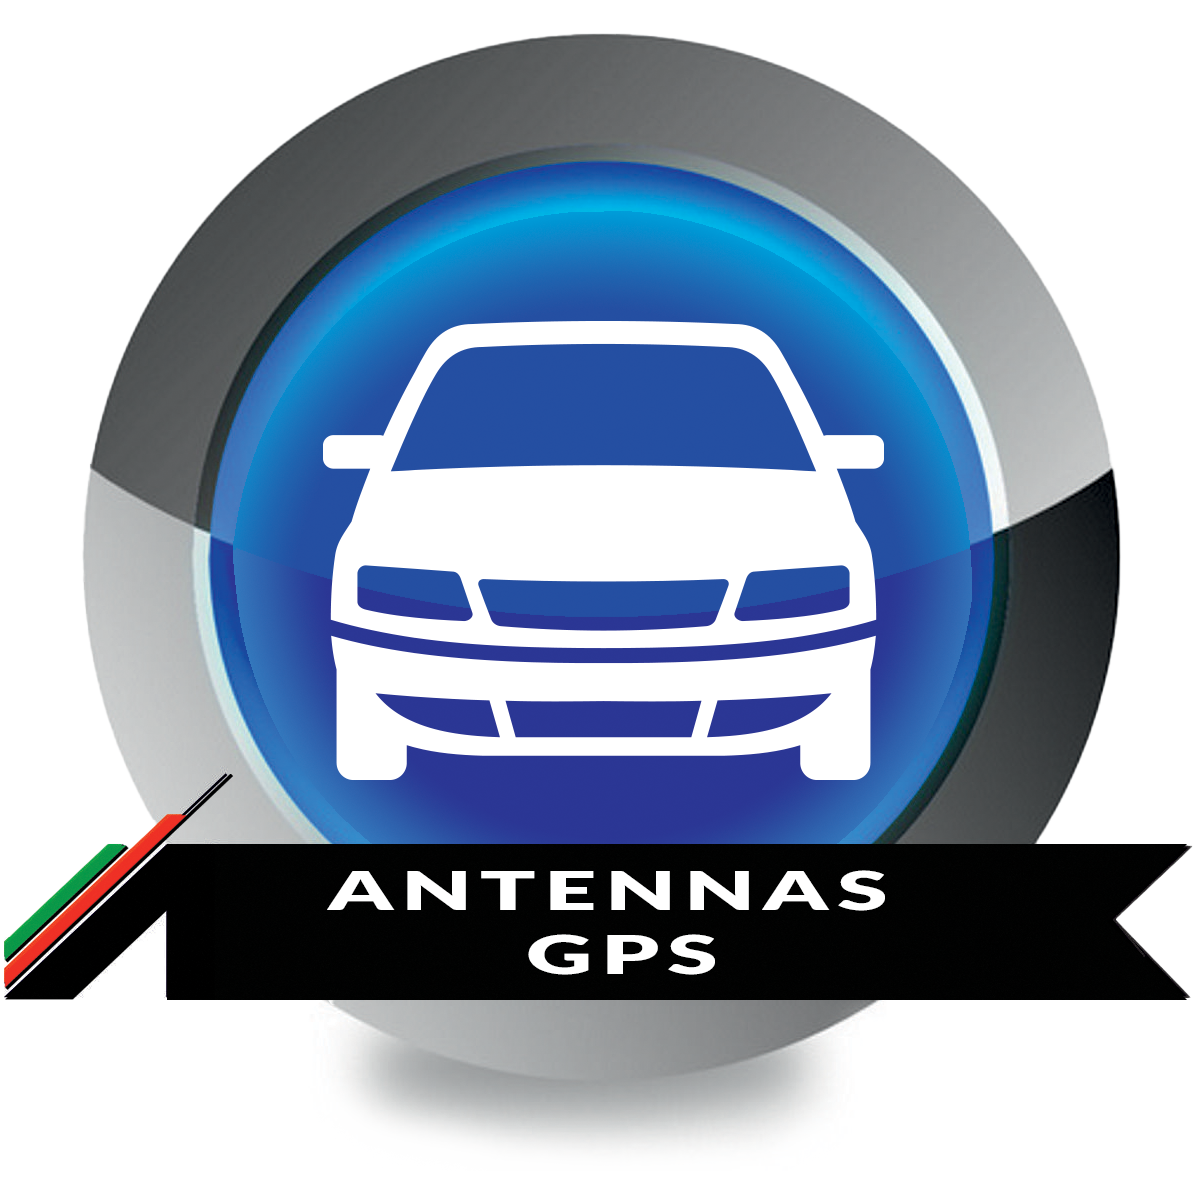 antennas-gps